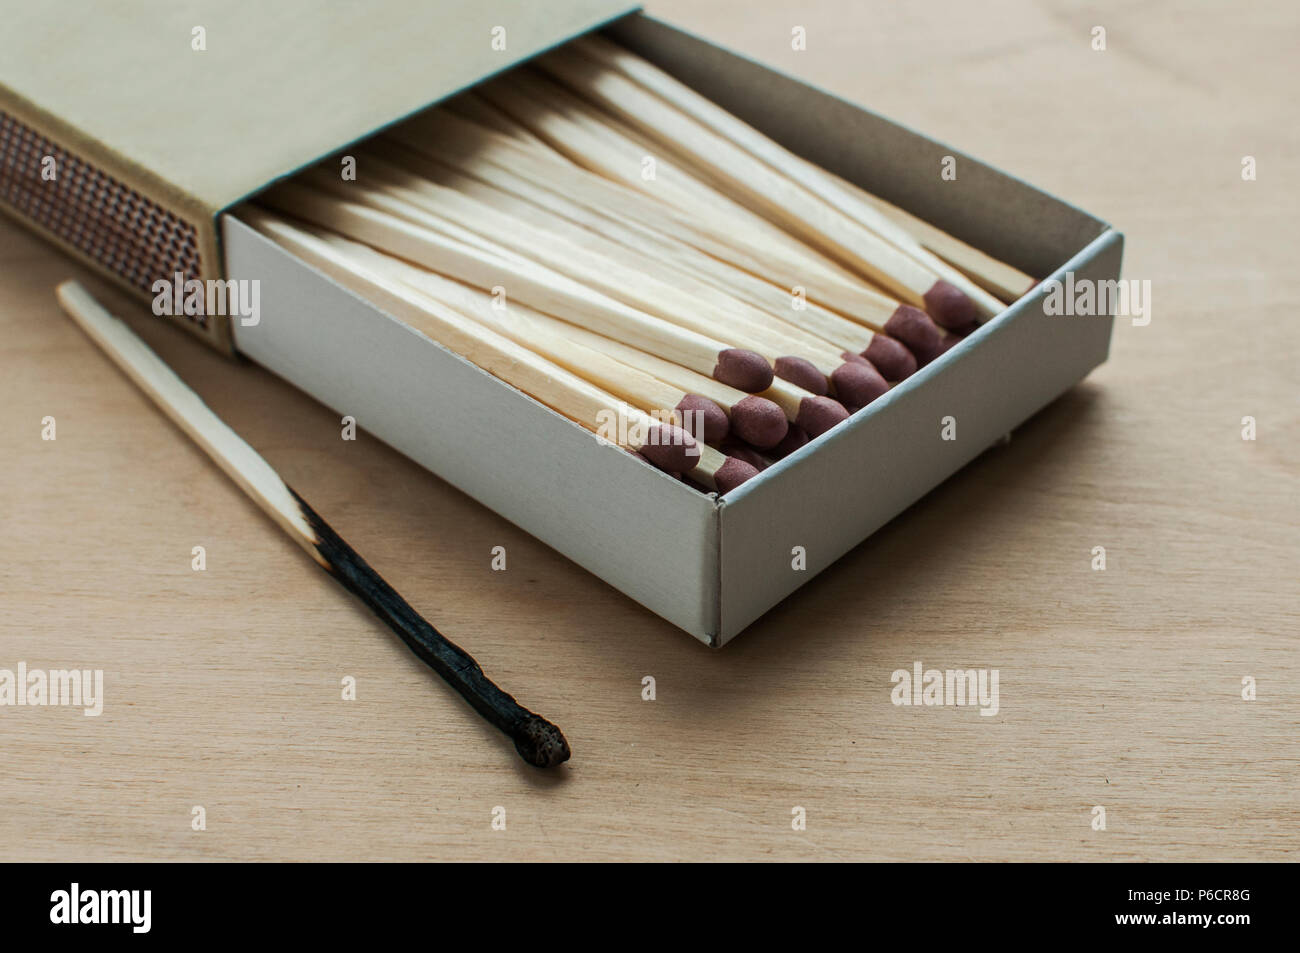 Langen hölzernen Sicherheit Streichhölzer und eine verbrannte Streichholz  in Karton Streichholzschachtel gestapelt auf Holz- Hintergrund  Stockfotografie - Alamy